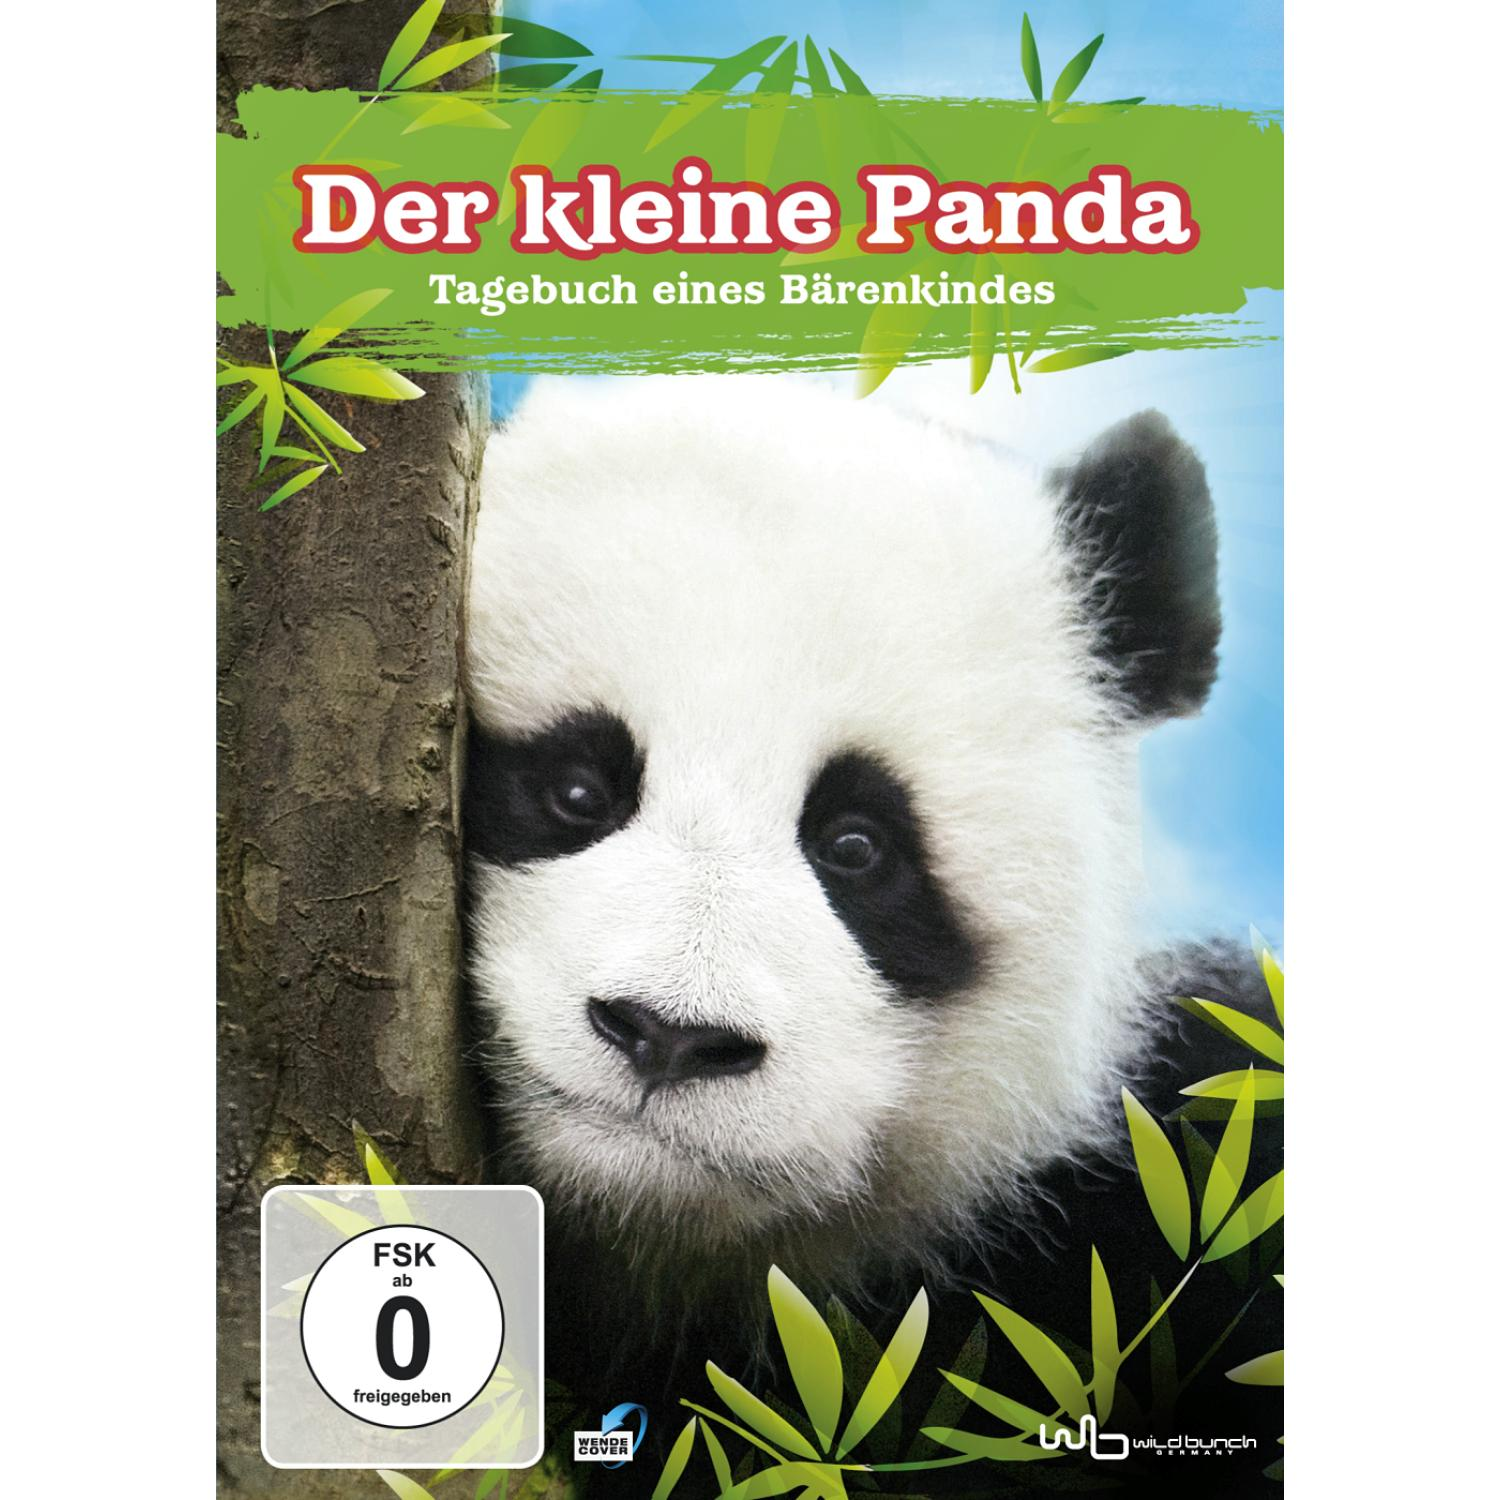 DER KLEINE PANDA - DVD TAGEBUCH BÄRENKINDES EINES